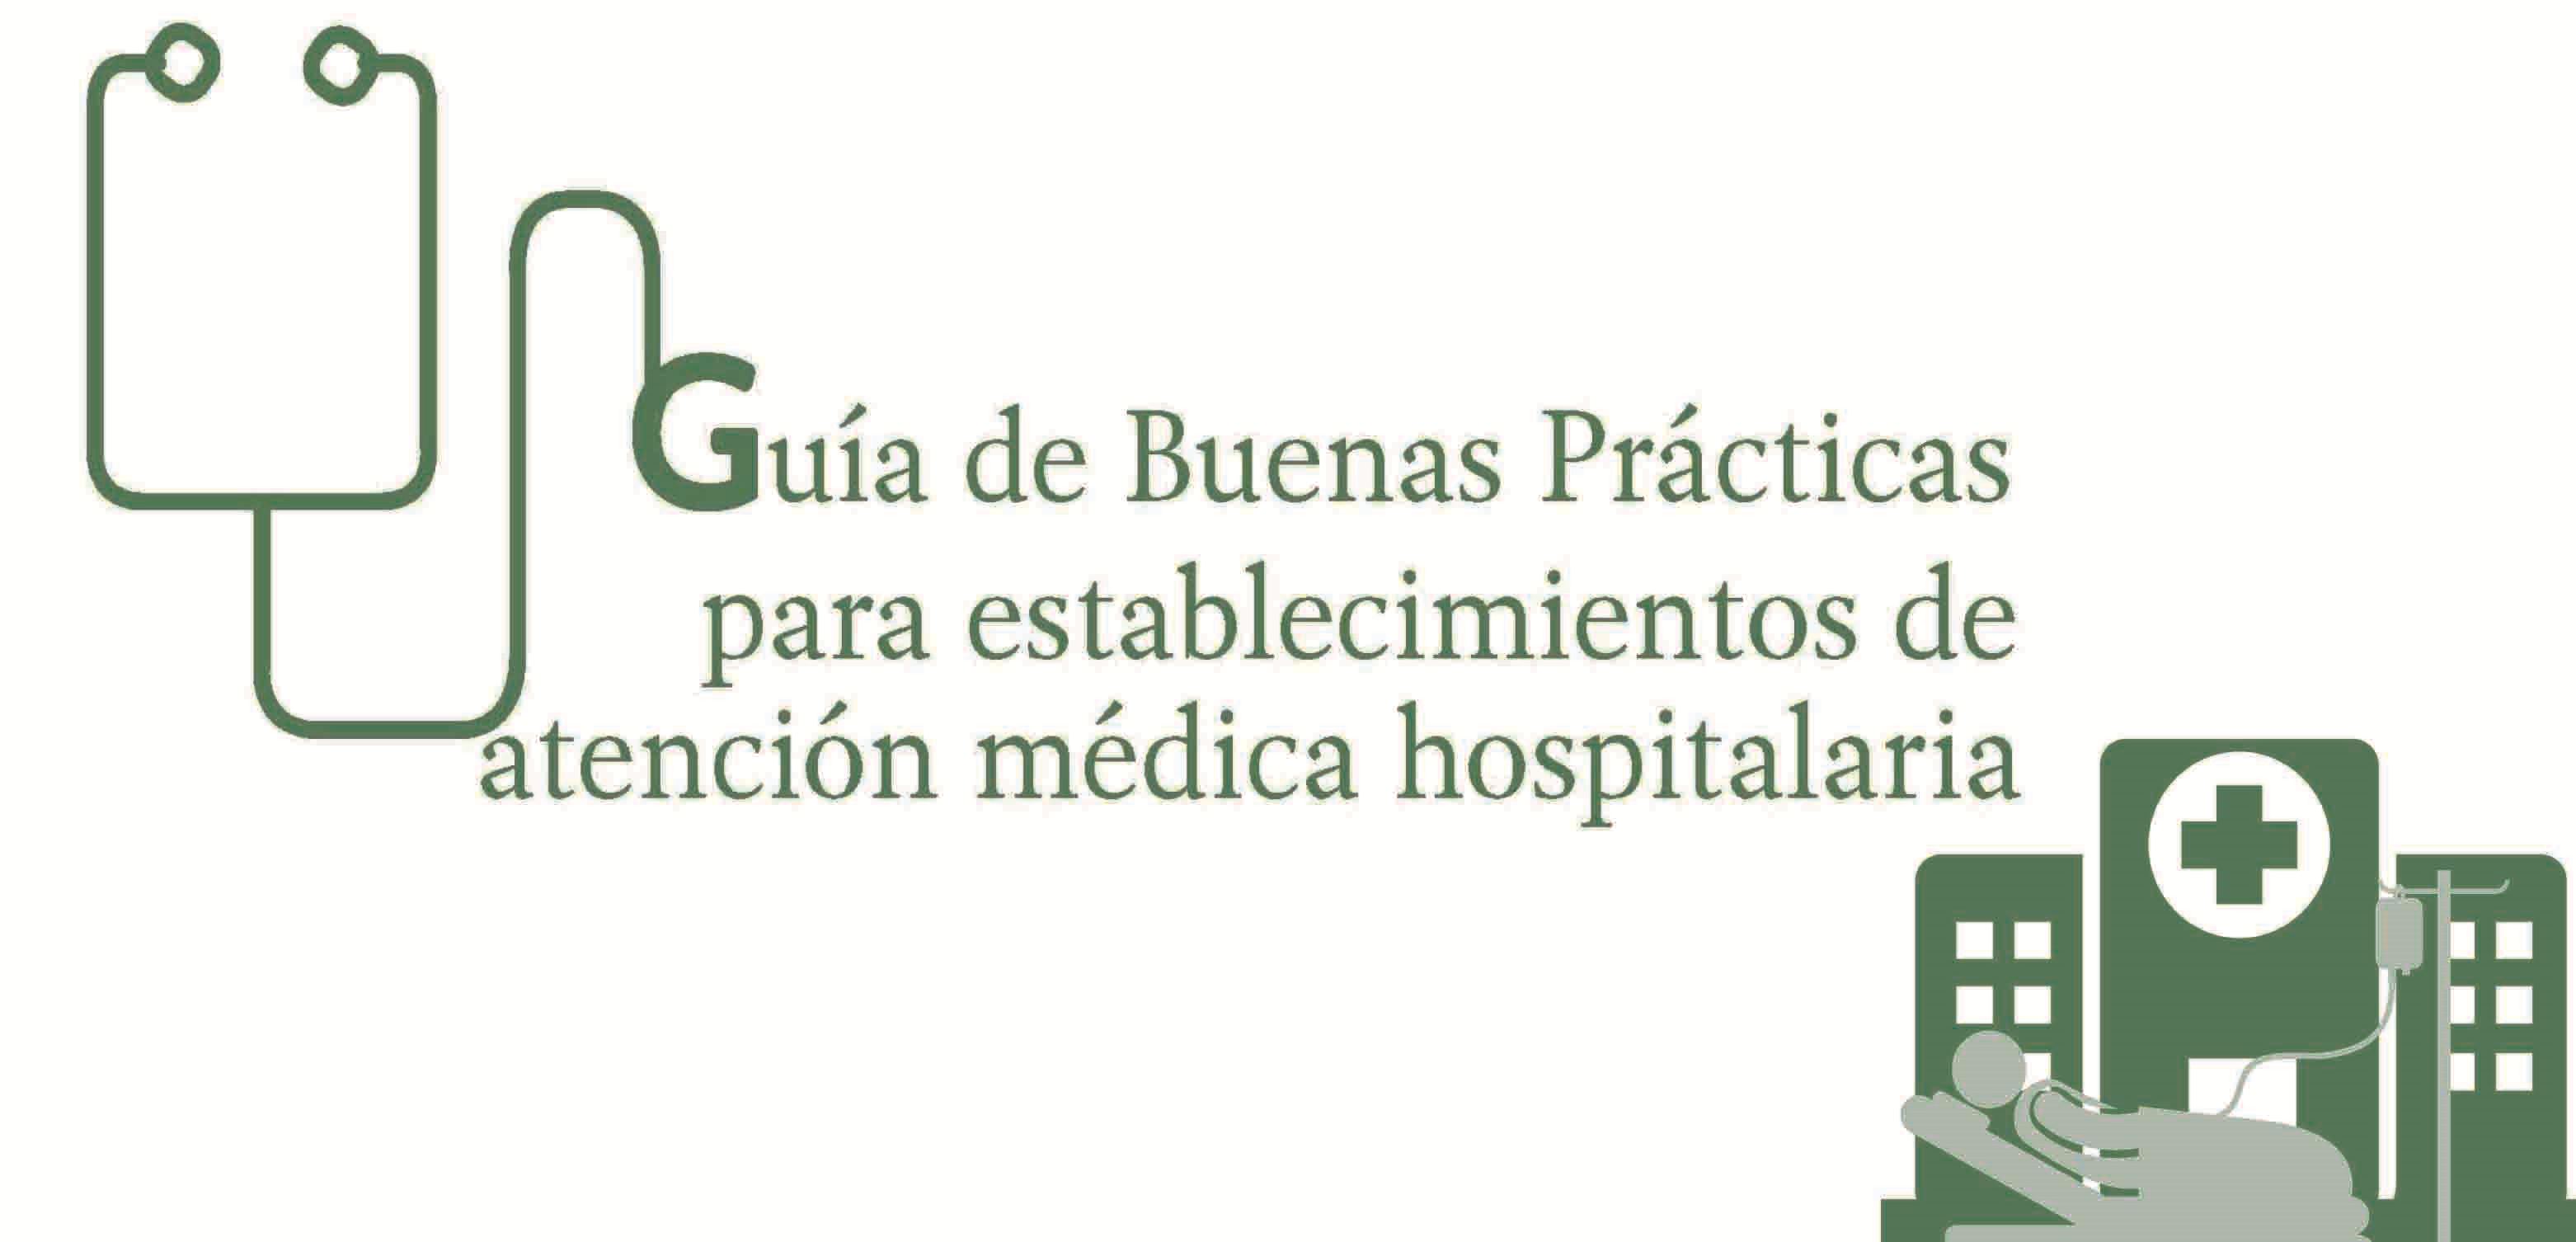 Imagen de la guía de buenas prácticas para establecimientos de atención médica hospitalaria